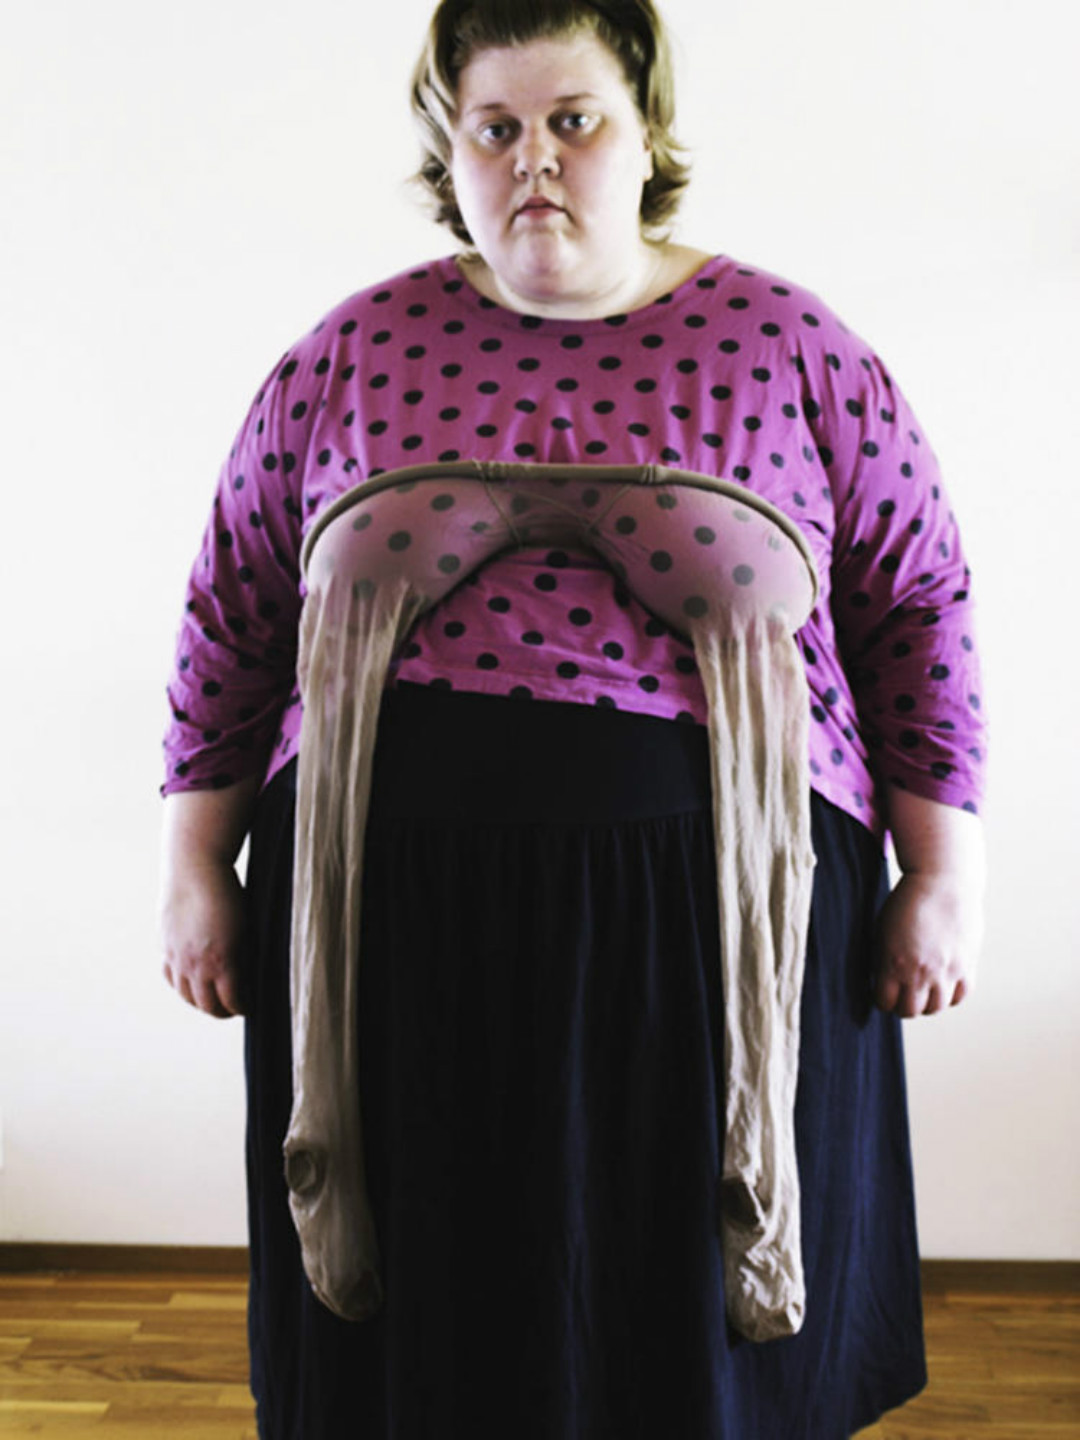 她被网友们称为全球最胖的女网红,曾经胖到过300斤,虽然现在瘦了一点